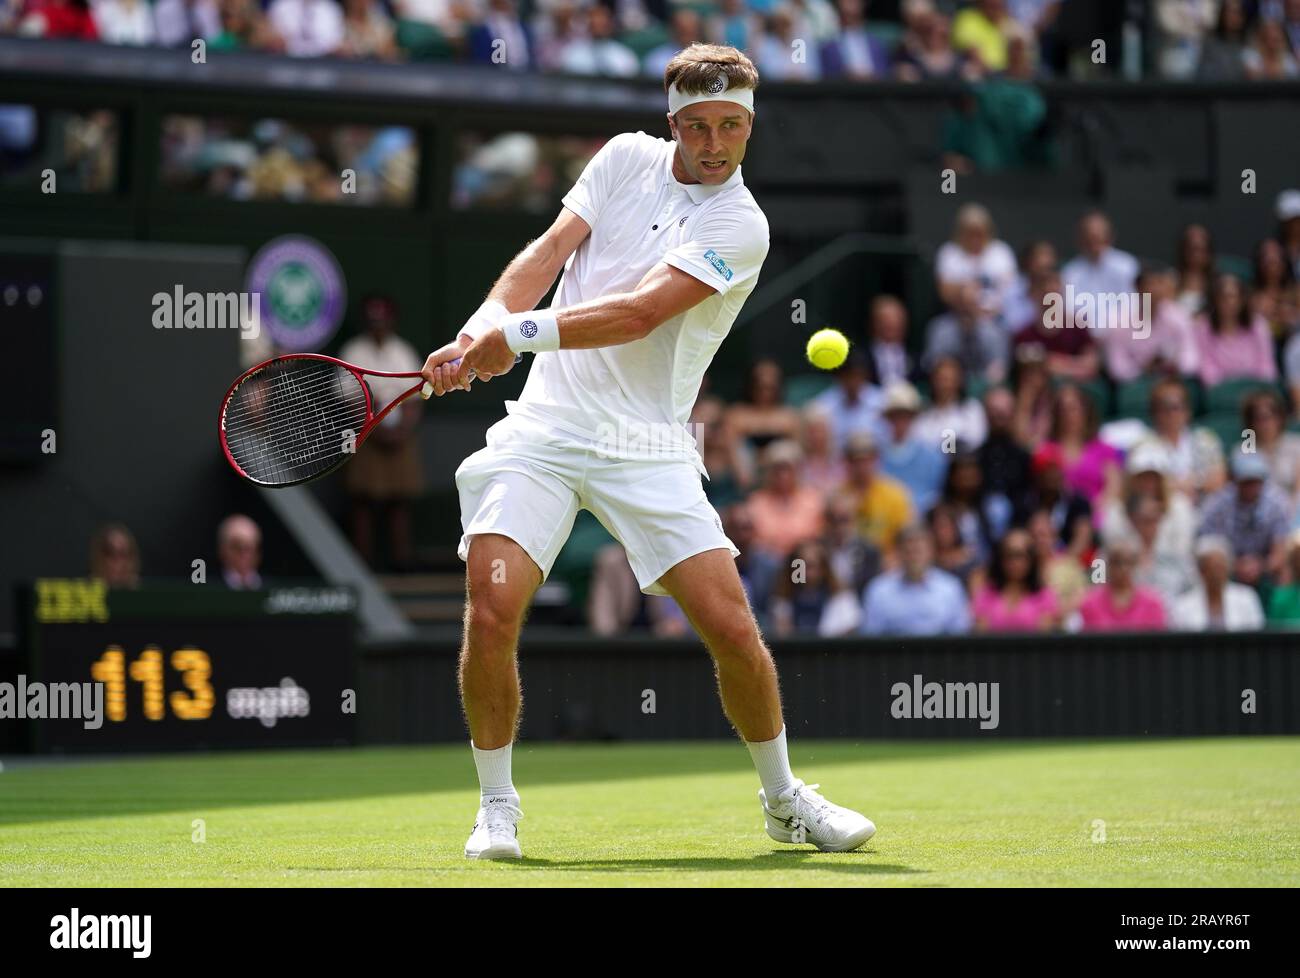 Liam Broady in azione contro Casper Ruud (non nella foto) il quarto giorno dei Campionati di Wimbledon 2023 all'All England Lawn Tennis and Croquet Club di Wimbledon. Data foto: Giovedì 6 luglio 2023. Foto Stock